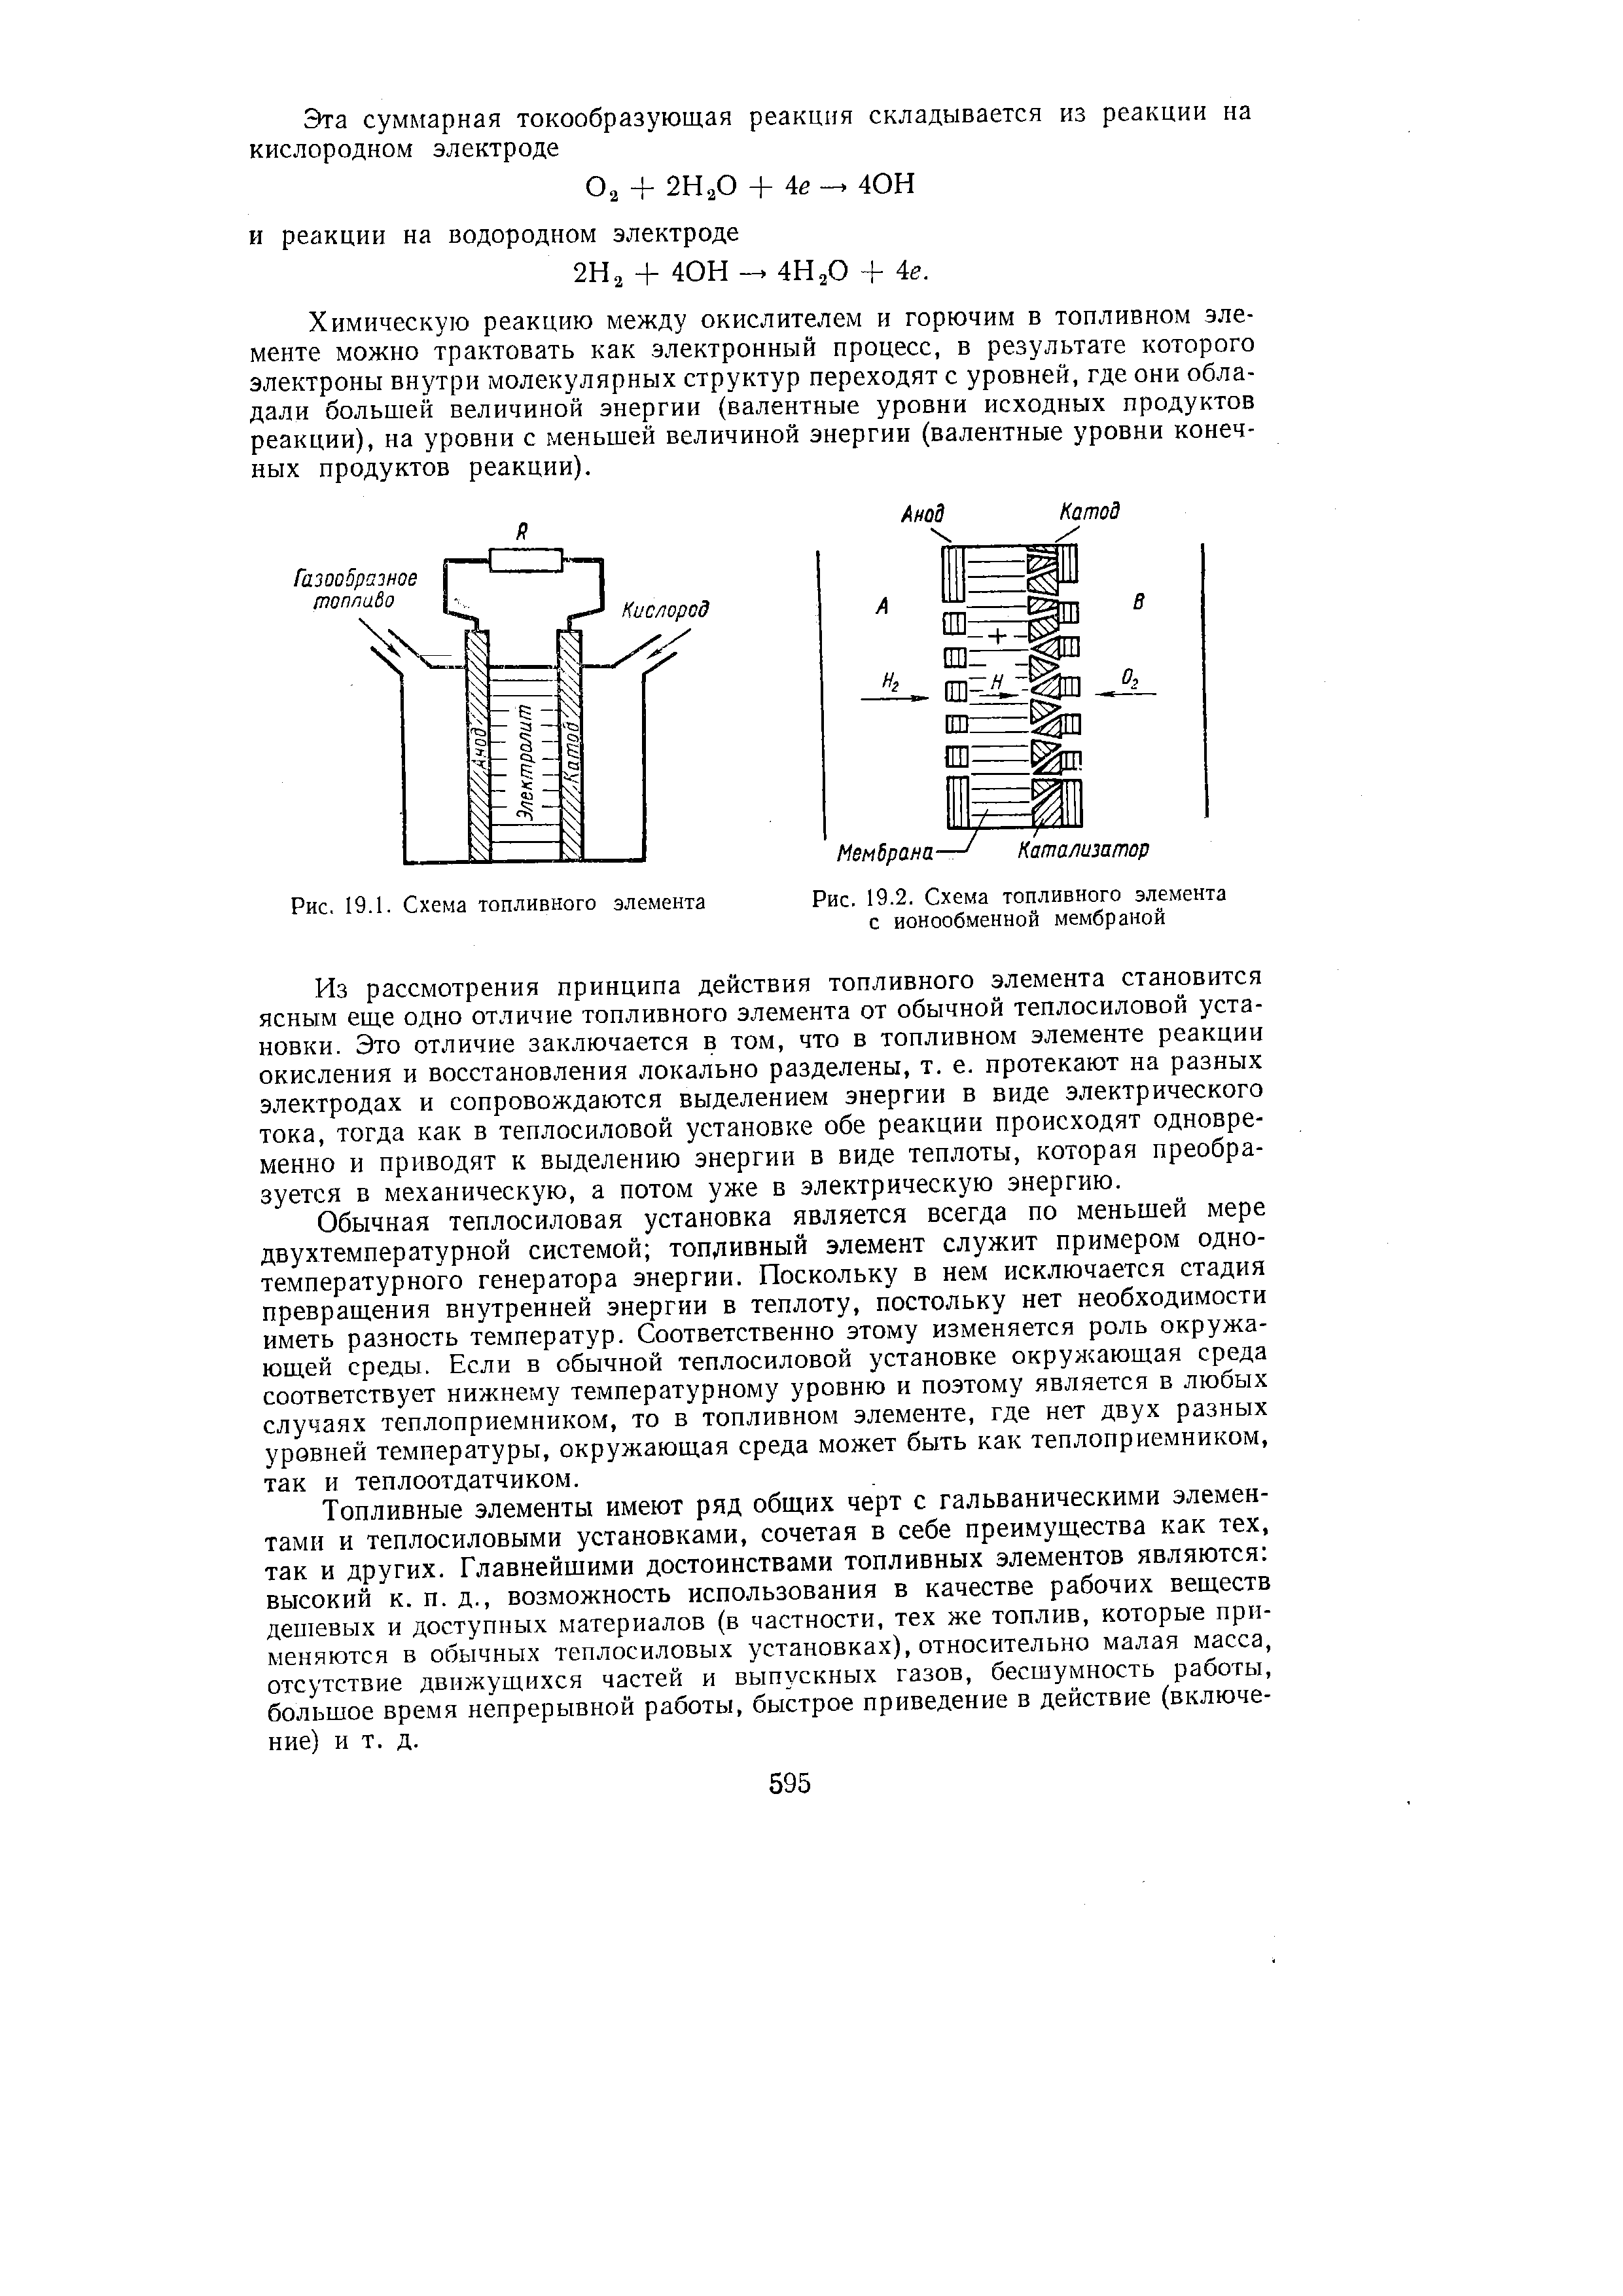 Рис. 19.2. Схема топливного элемента с ионообменной мембраной
